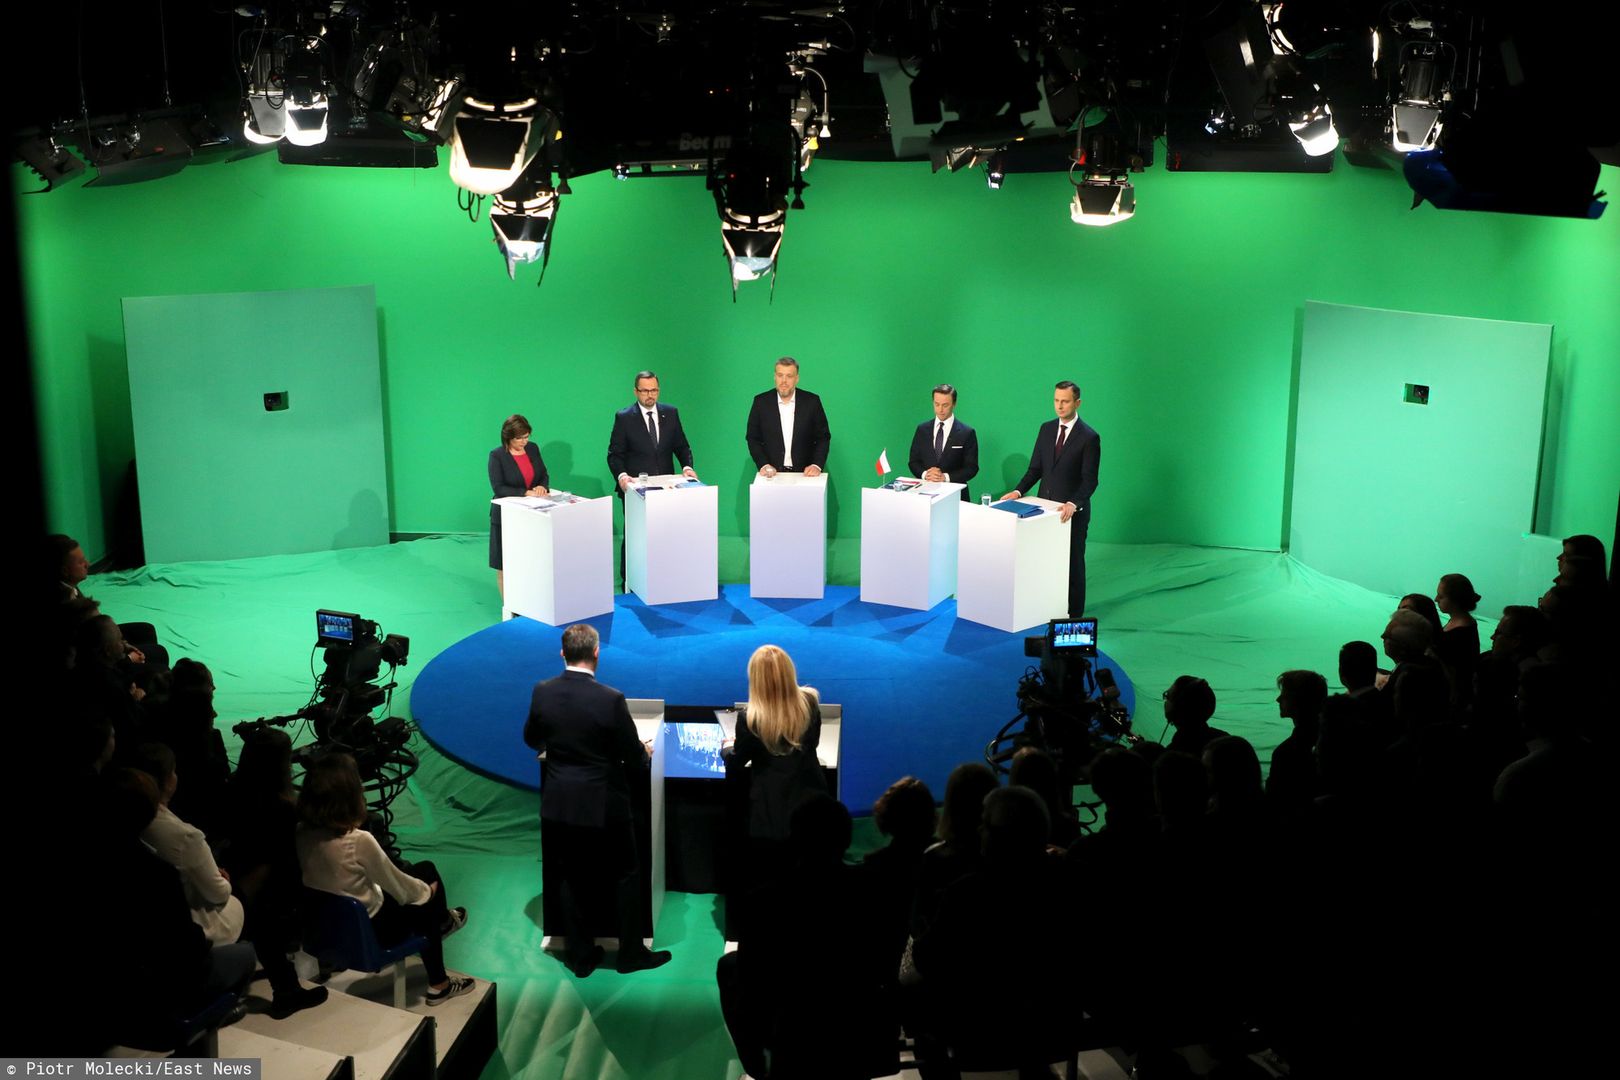 Wybory parlamentarne 2019. Debata kandydatów w studiu TVN24